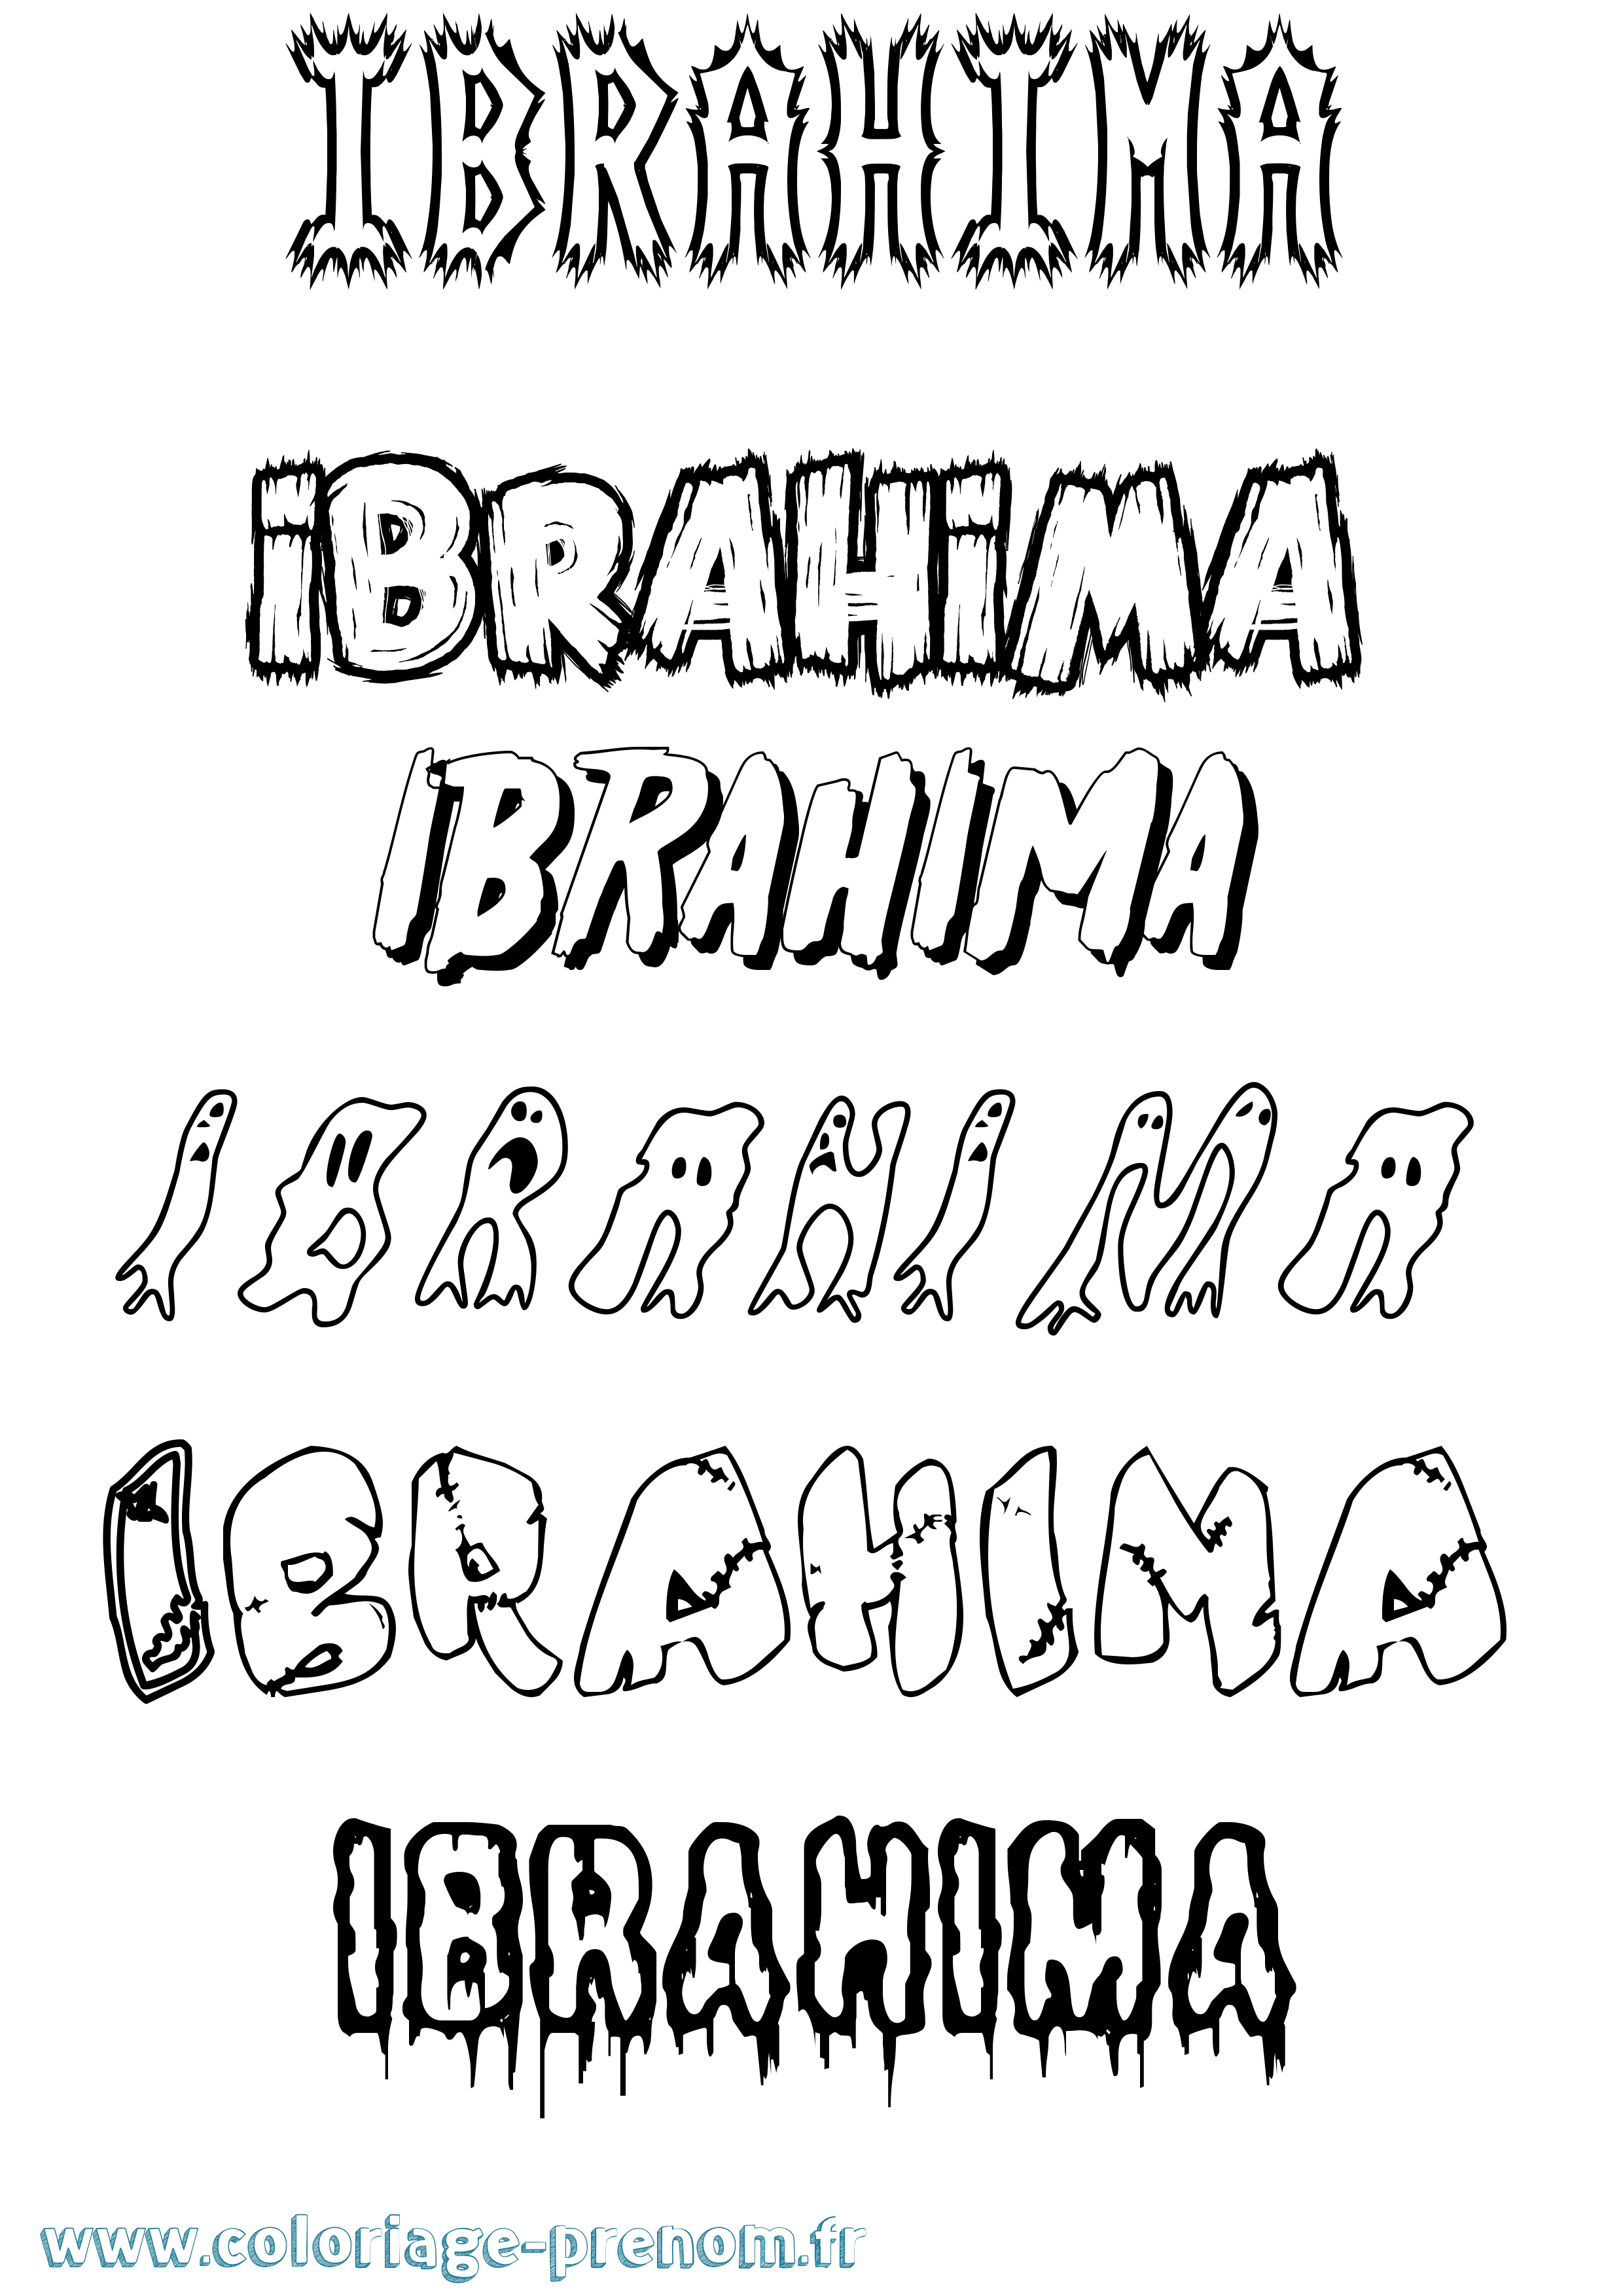 Coloriage prénom Ibrahima Frisson